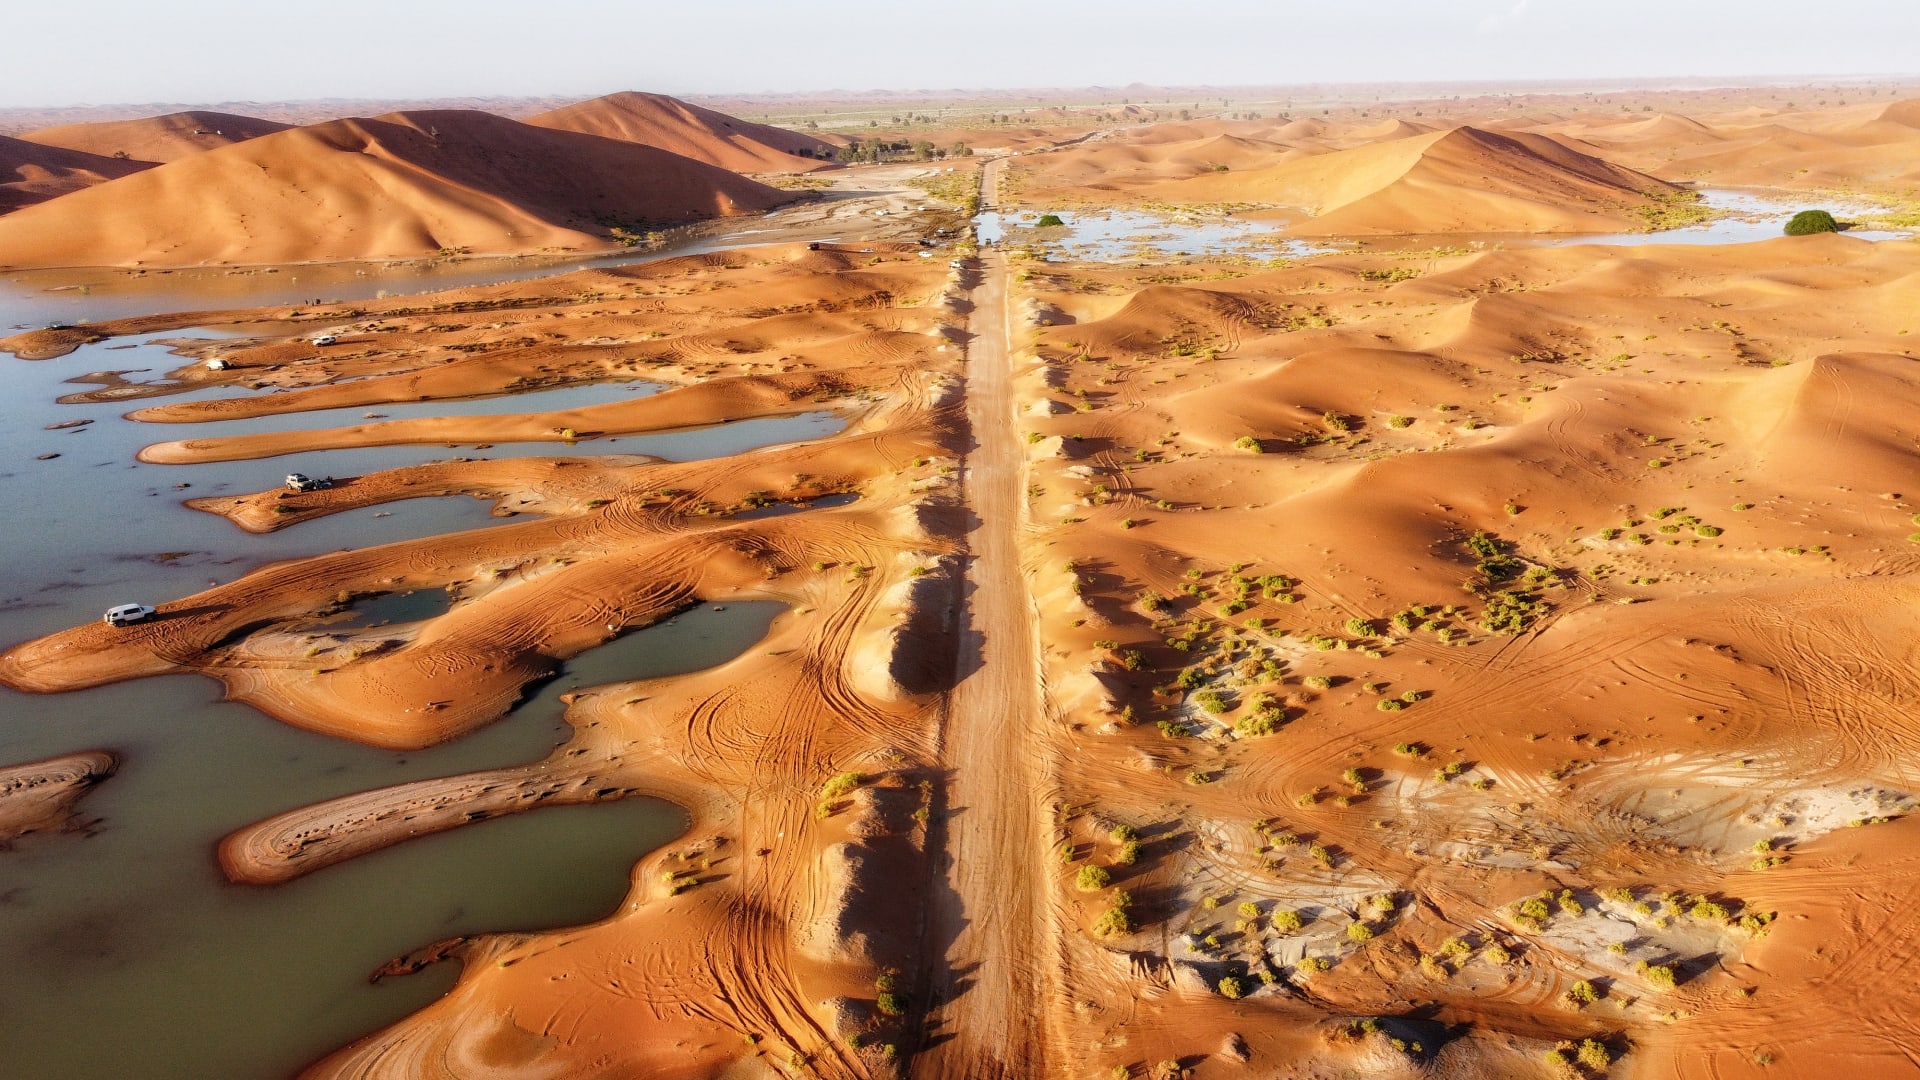 مشاهد بديعة في سلطنة عمان..إعصار "شاهين" يحول صحراء الربع الخالي إلى لوحة فنية